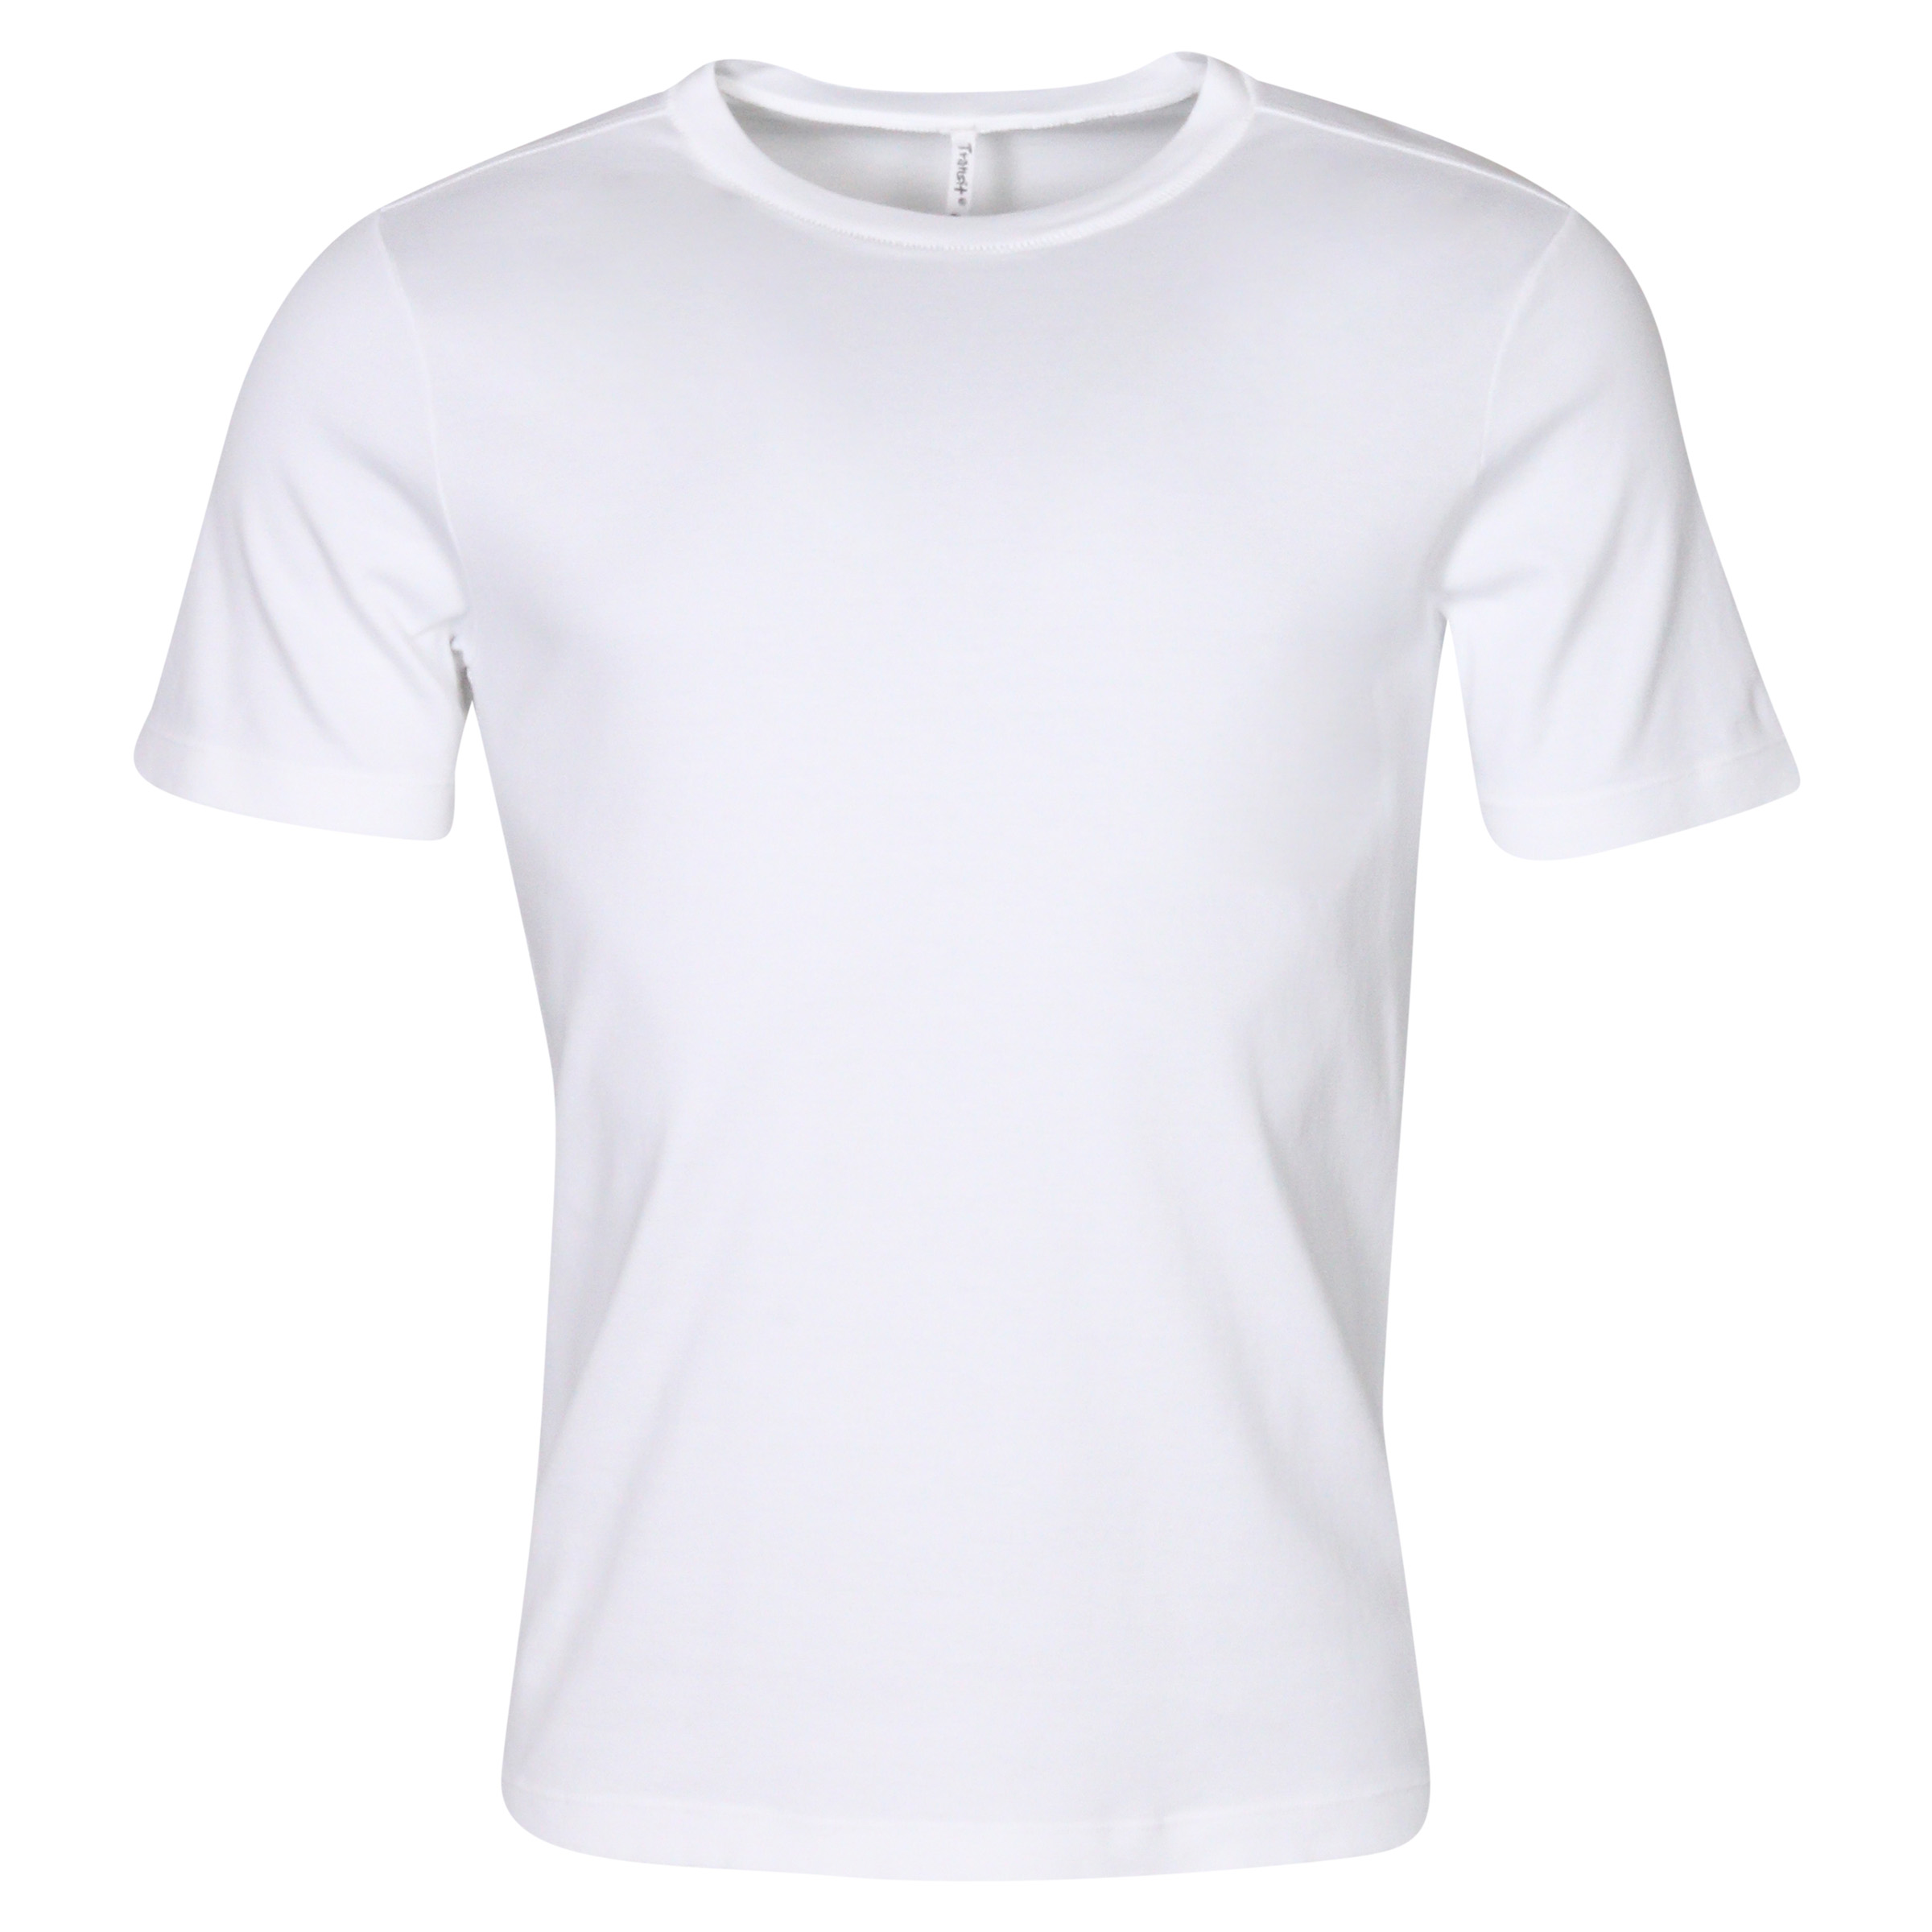 Transit Uomo Cotton T-Shirt Offwhite XXL